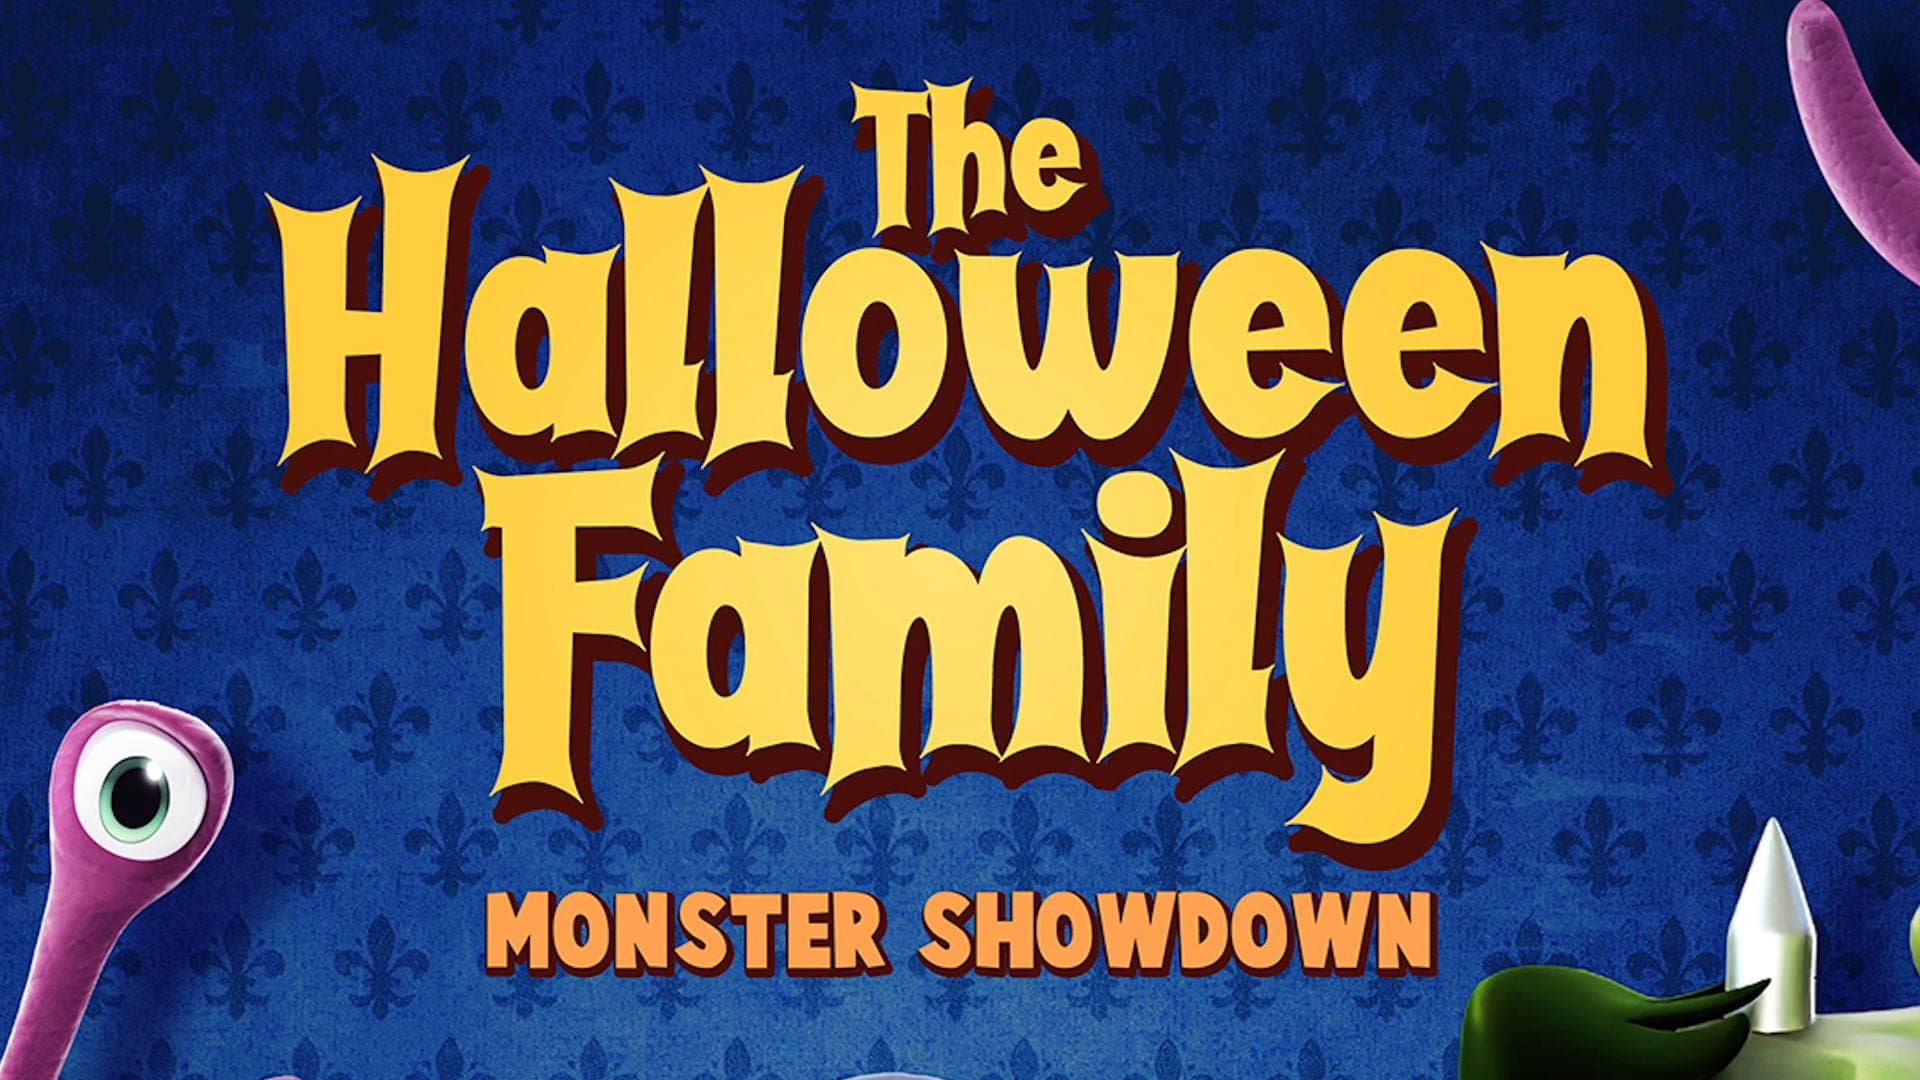 The Halloween Family: Monster Showdown background